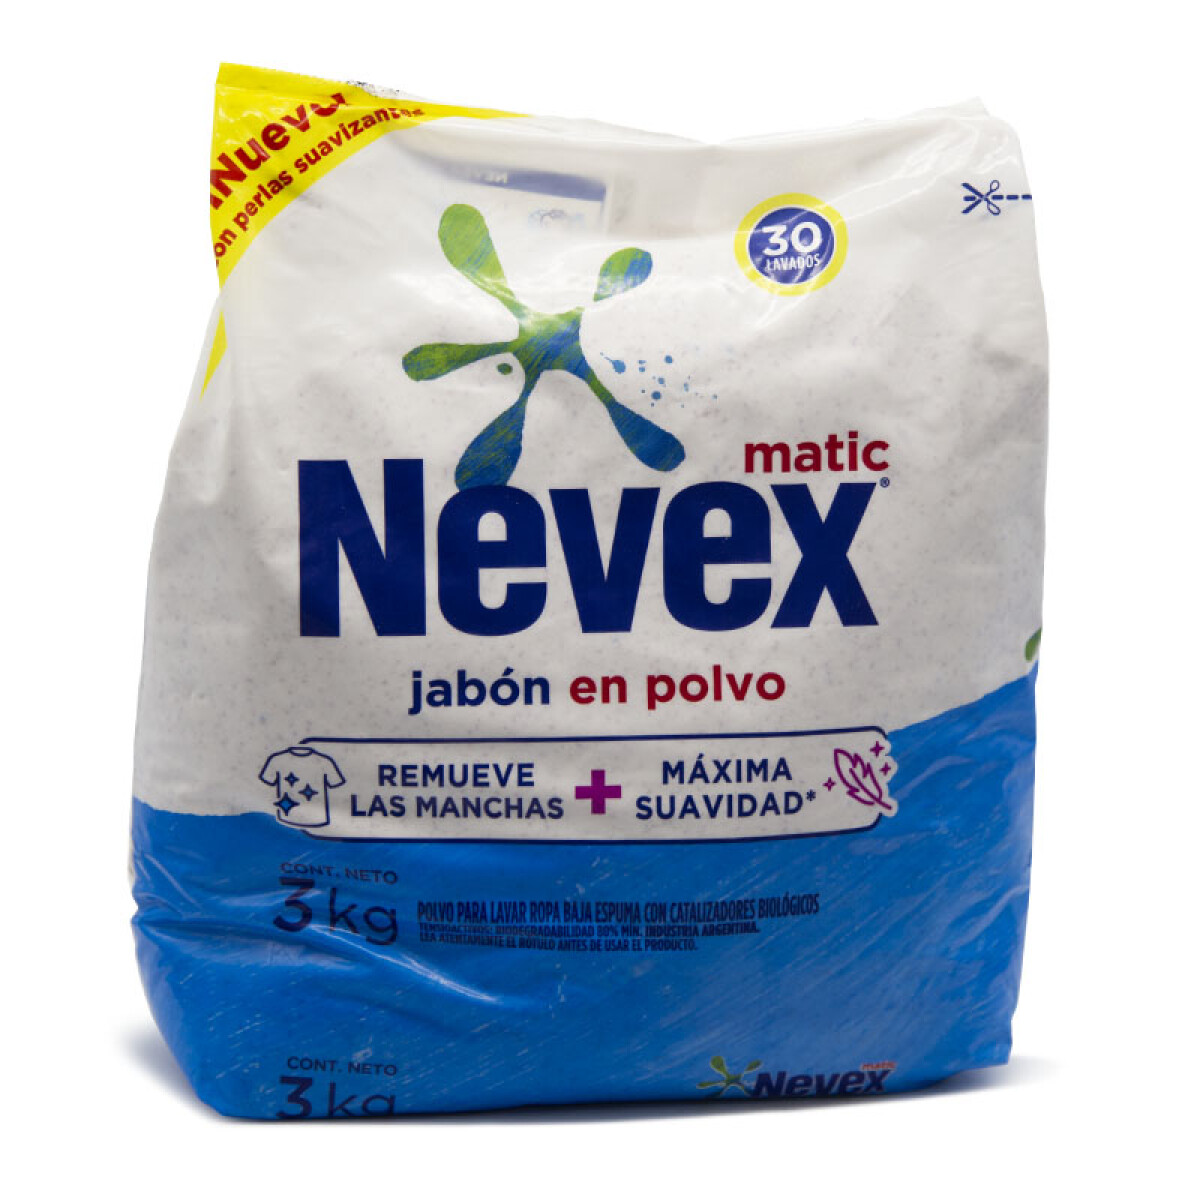 Jabón en polvo NEVEX 3kg / Celeste Matic 